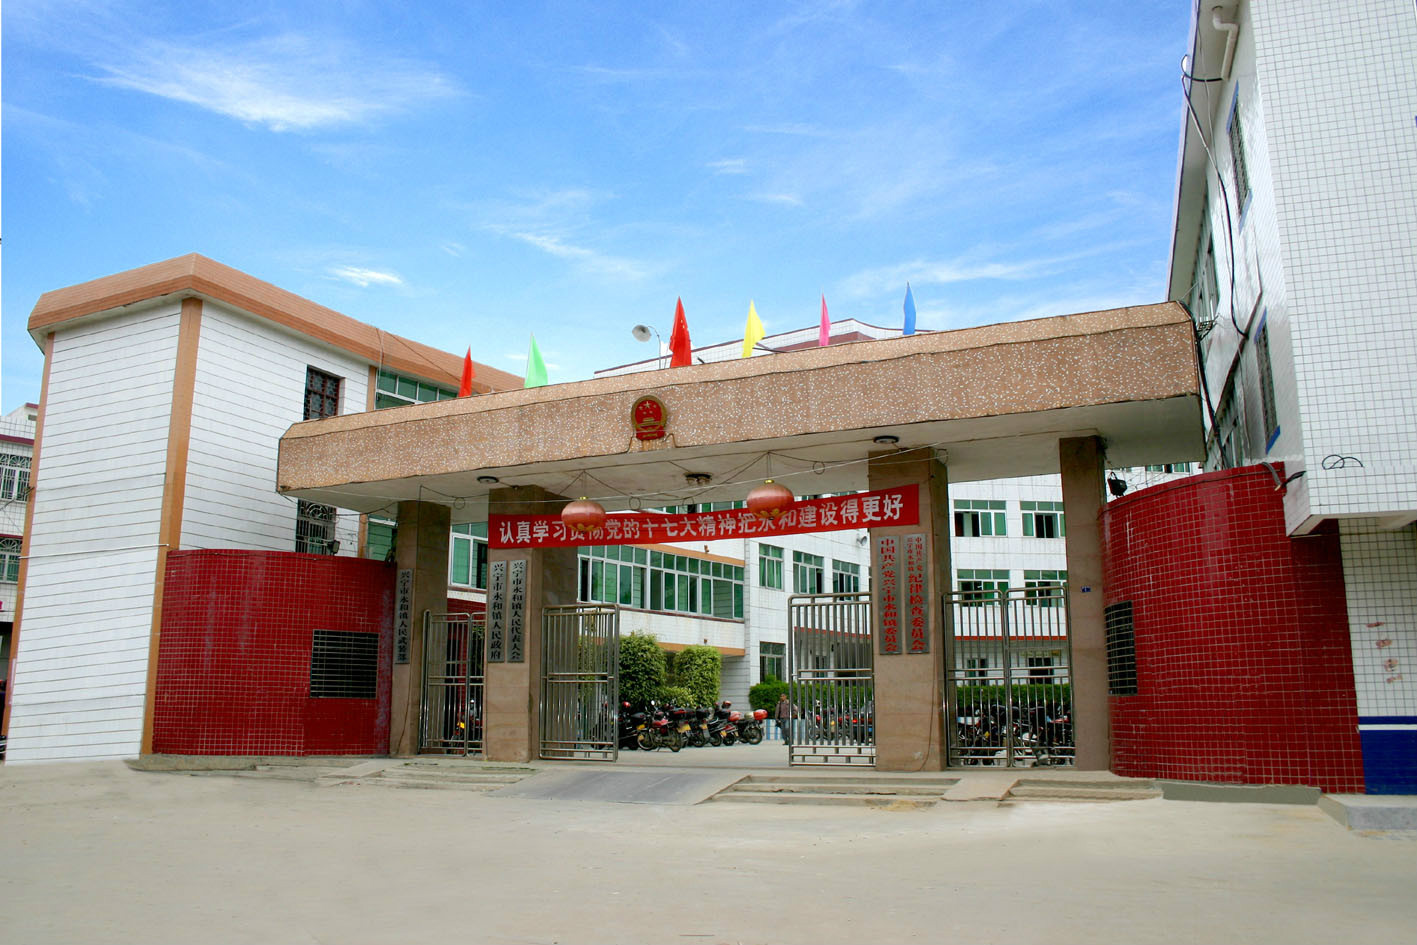 永和镇(行政区划)永和镇隶属于广东省兴宁市,位于兴宁市东部,东邻径南